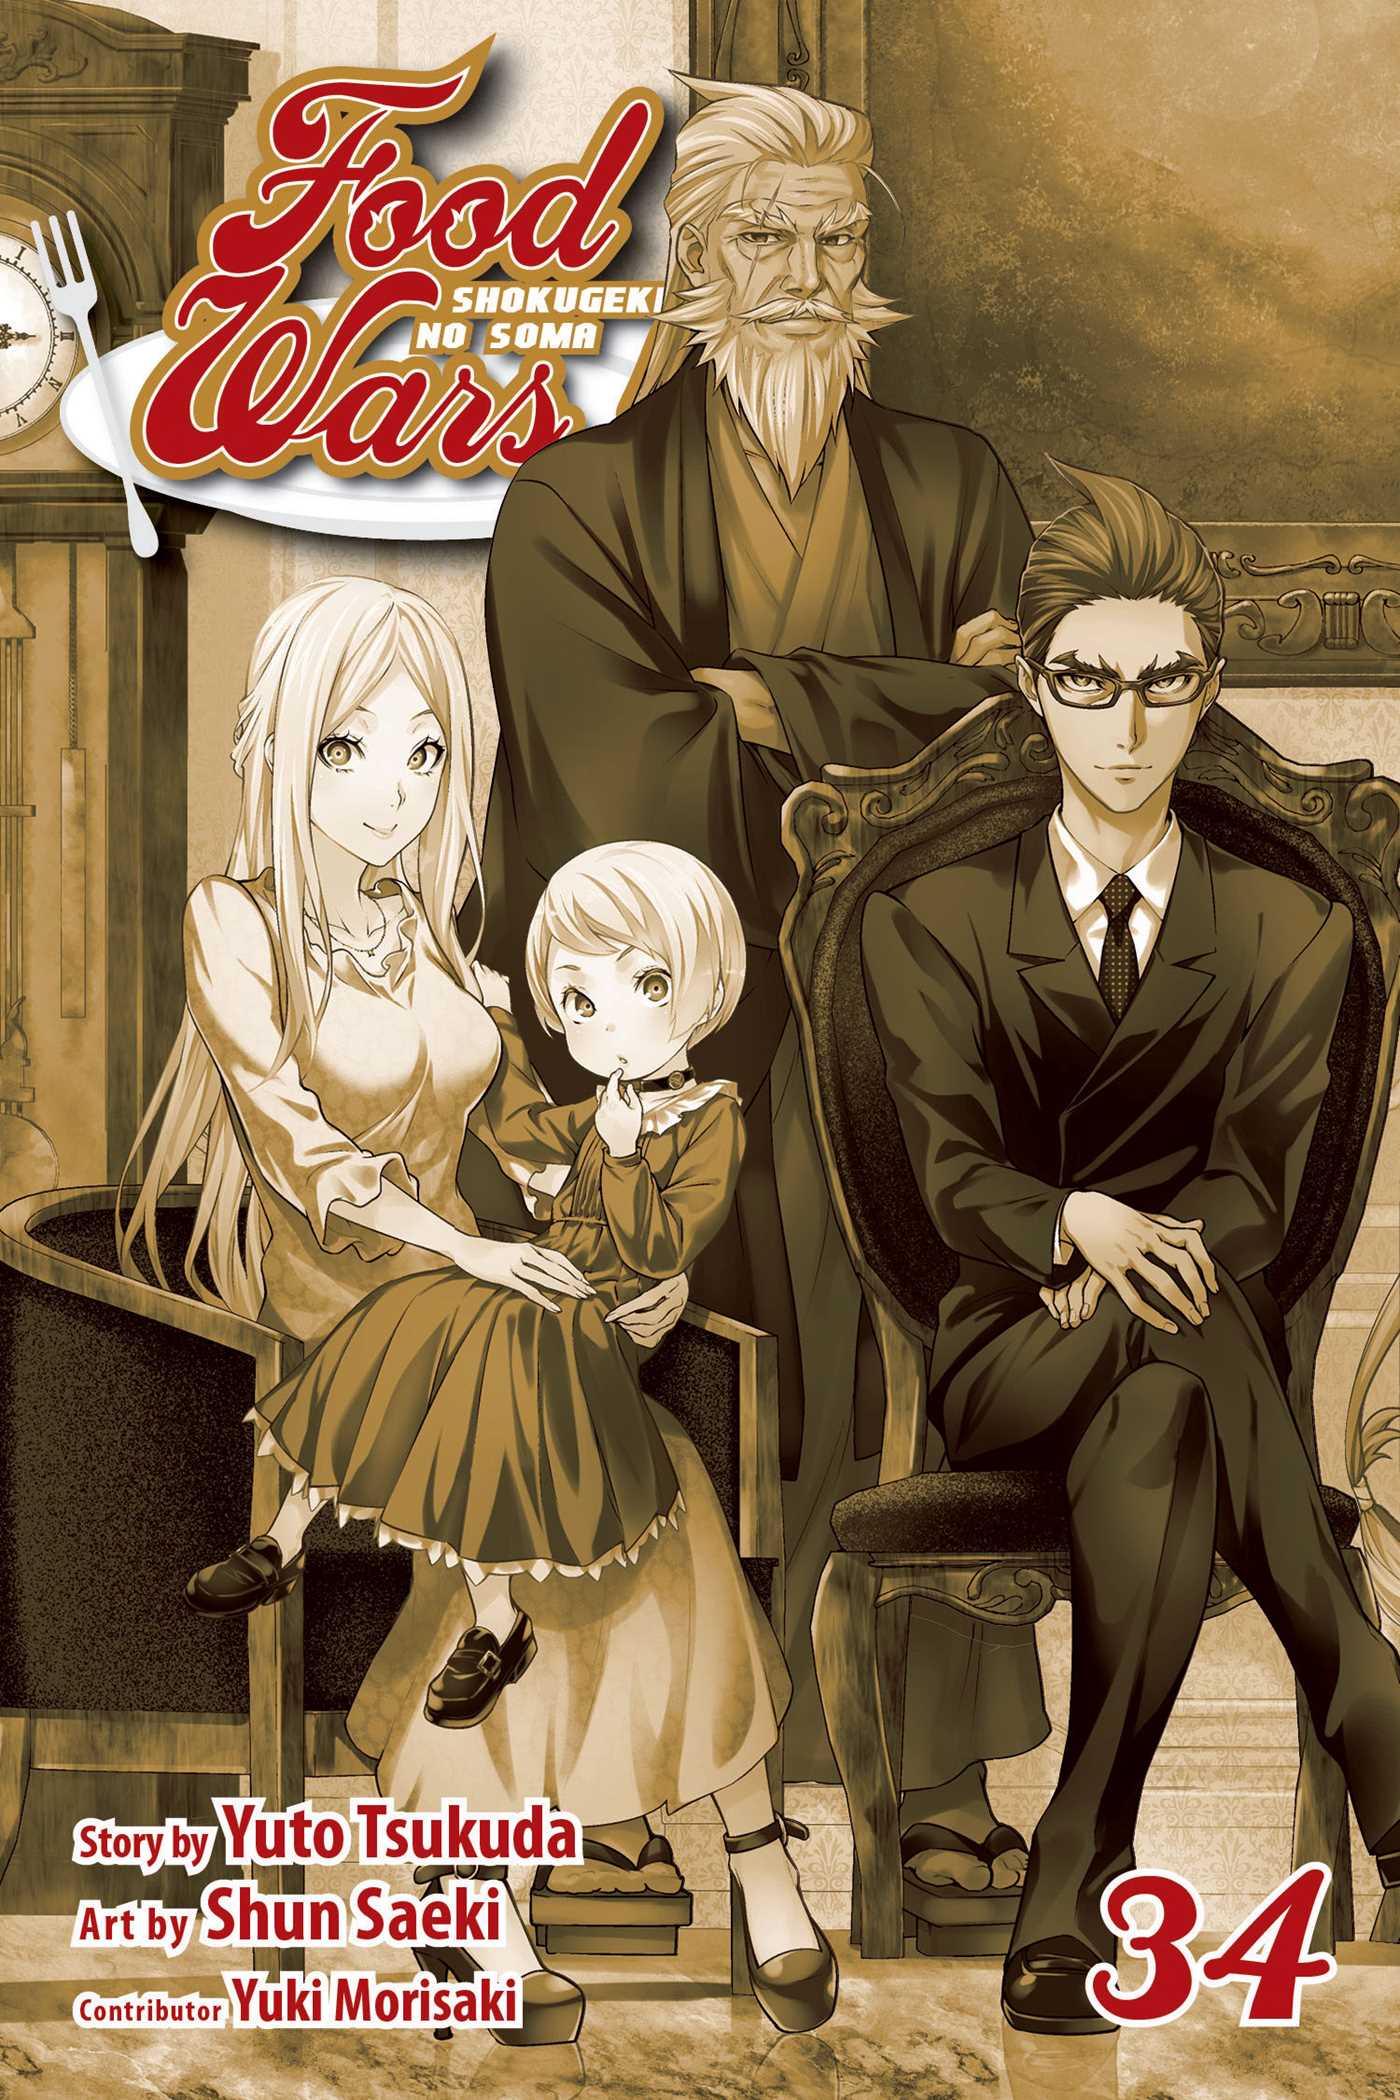 Food Wars!: Shokugeki no Soma Vol. 34 | Tsukuda, Yuto (Auteur) | Saeki, Shun (Illustrateur)